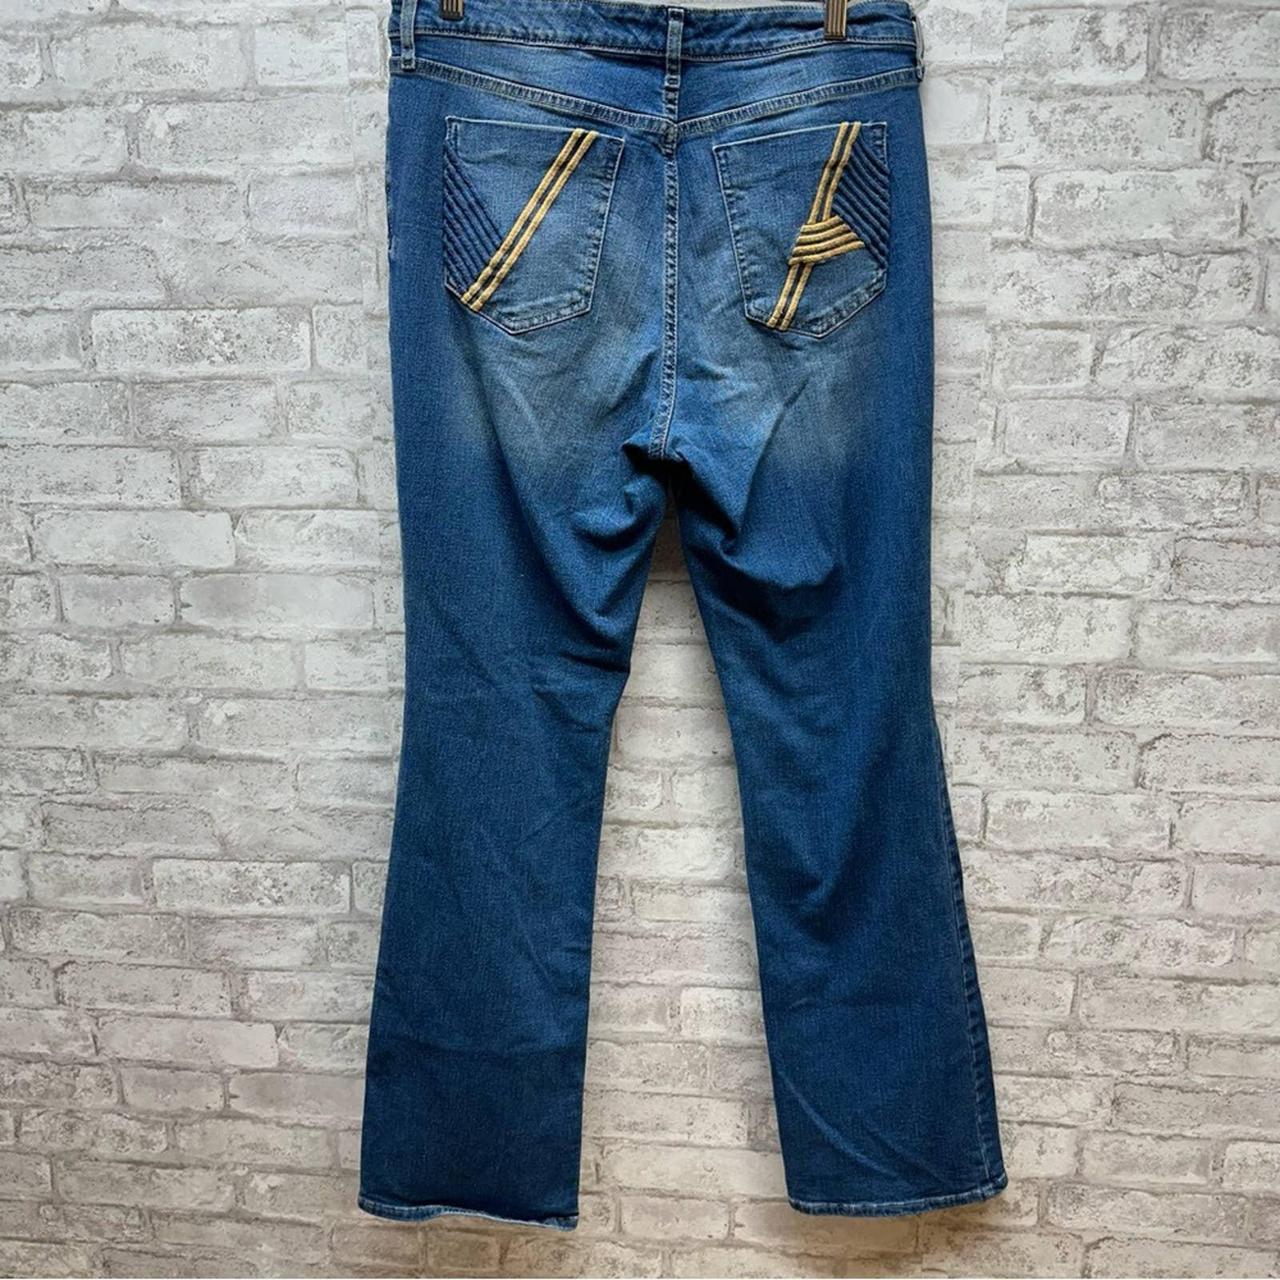 Vintage America boot cut jeans women's 12/31 flare... - Depop